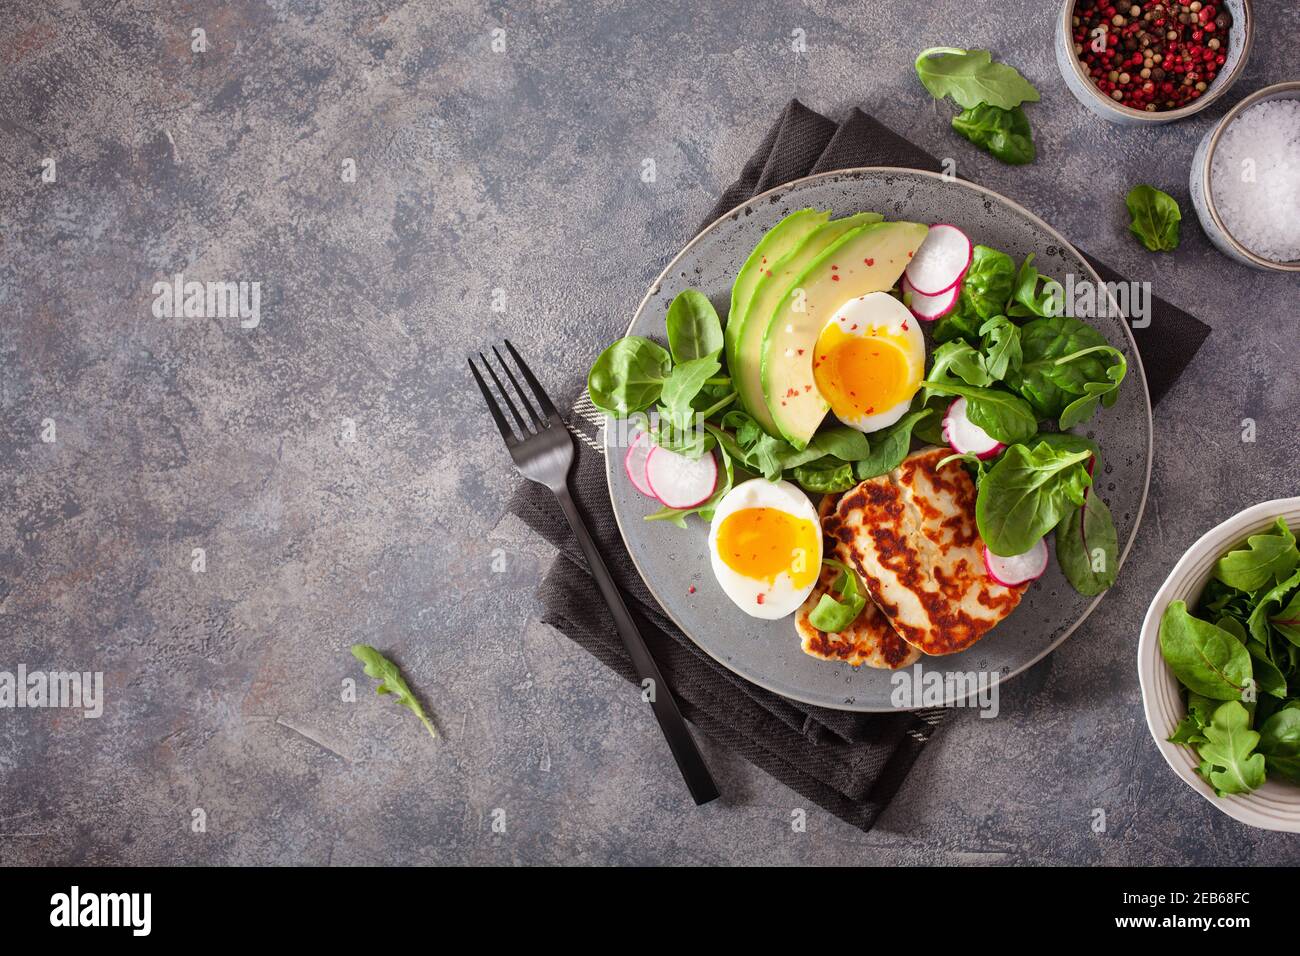 Ceto paleo dieta saludable Desayuno: huevos, aguacate, queso halloumi, ensalada de hojas Foto de stock